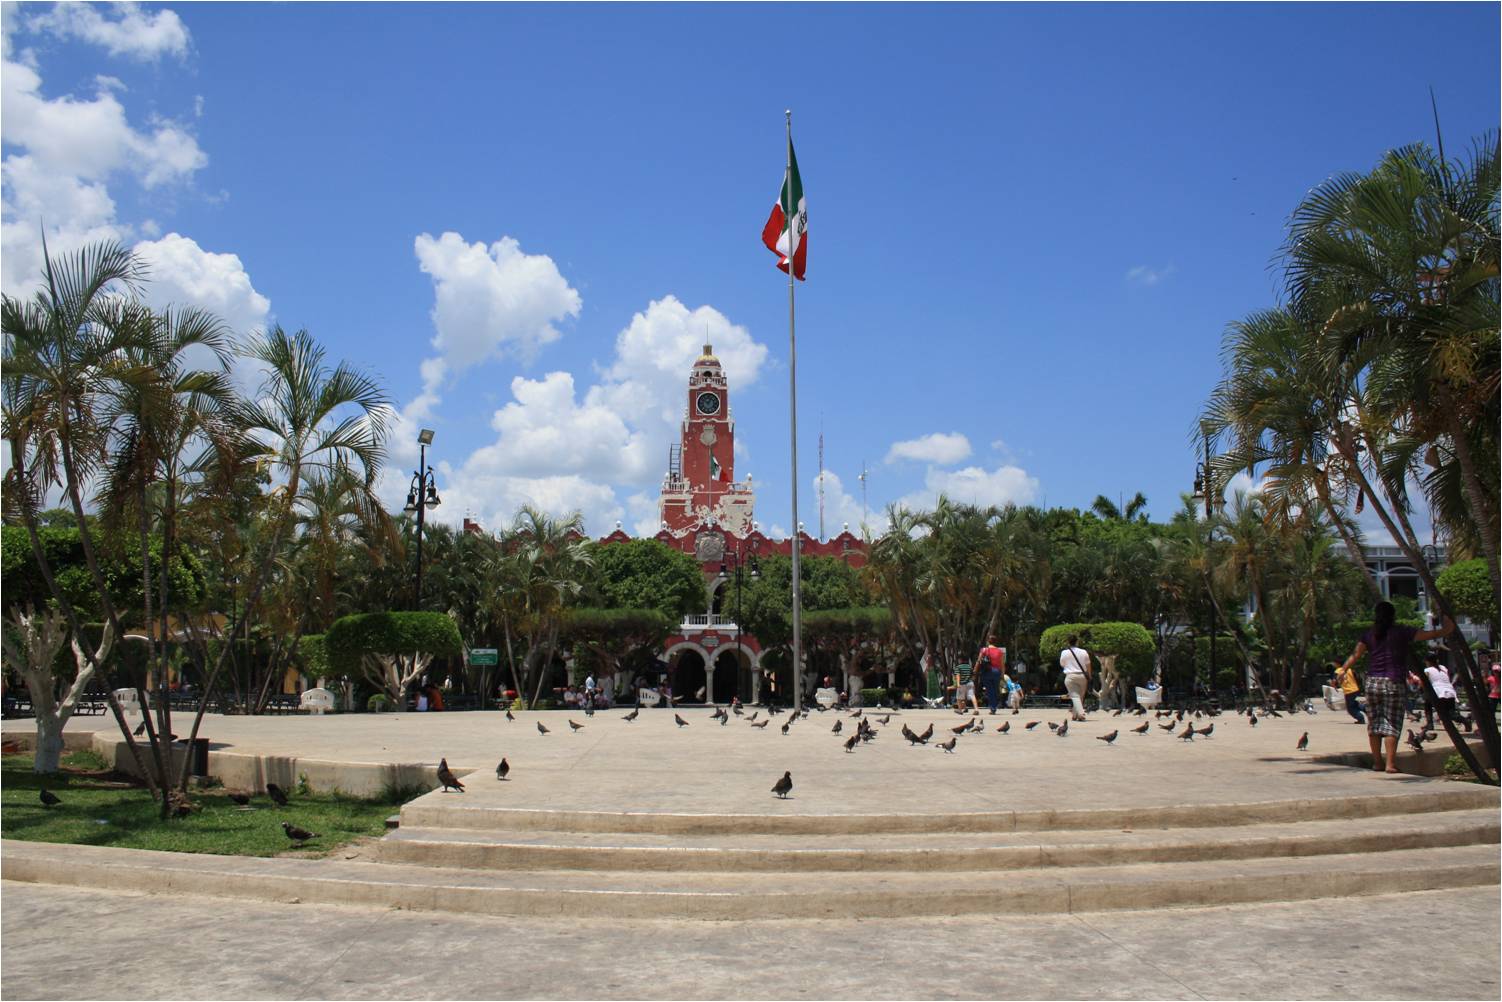 City Center of Mérida